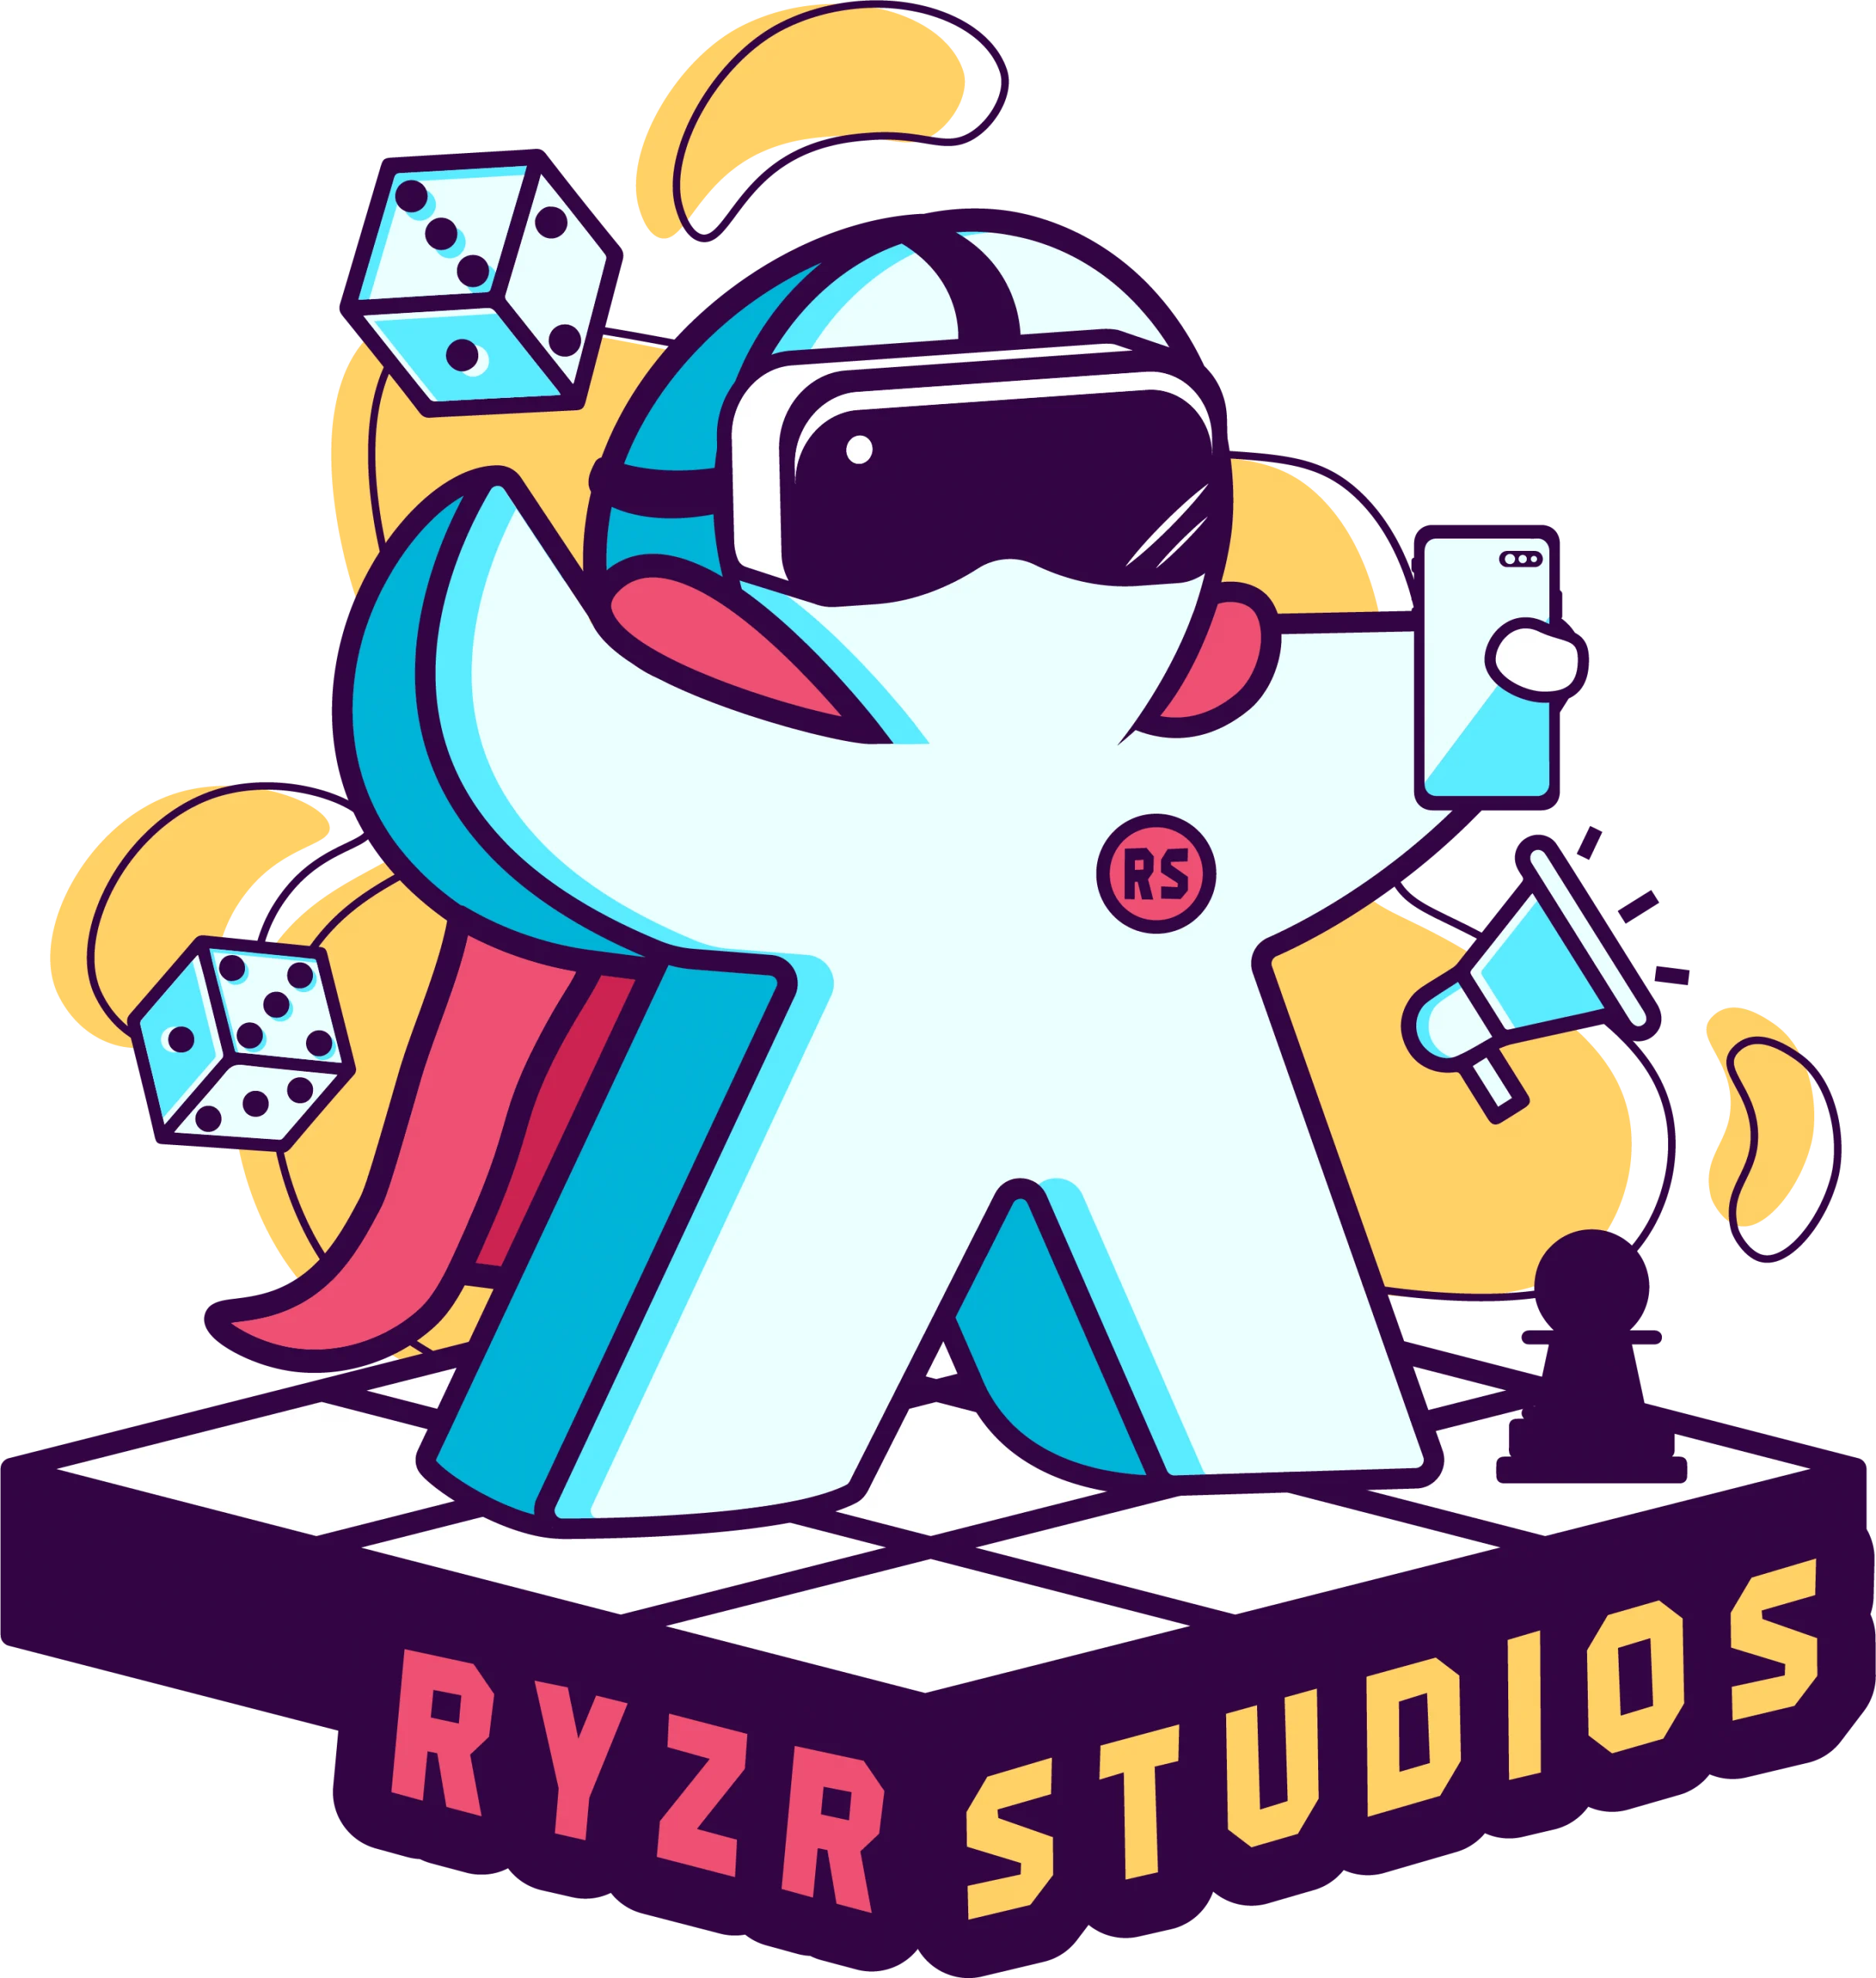 Ryzr Studios